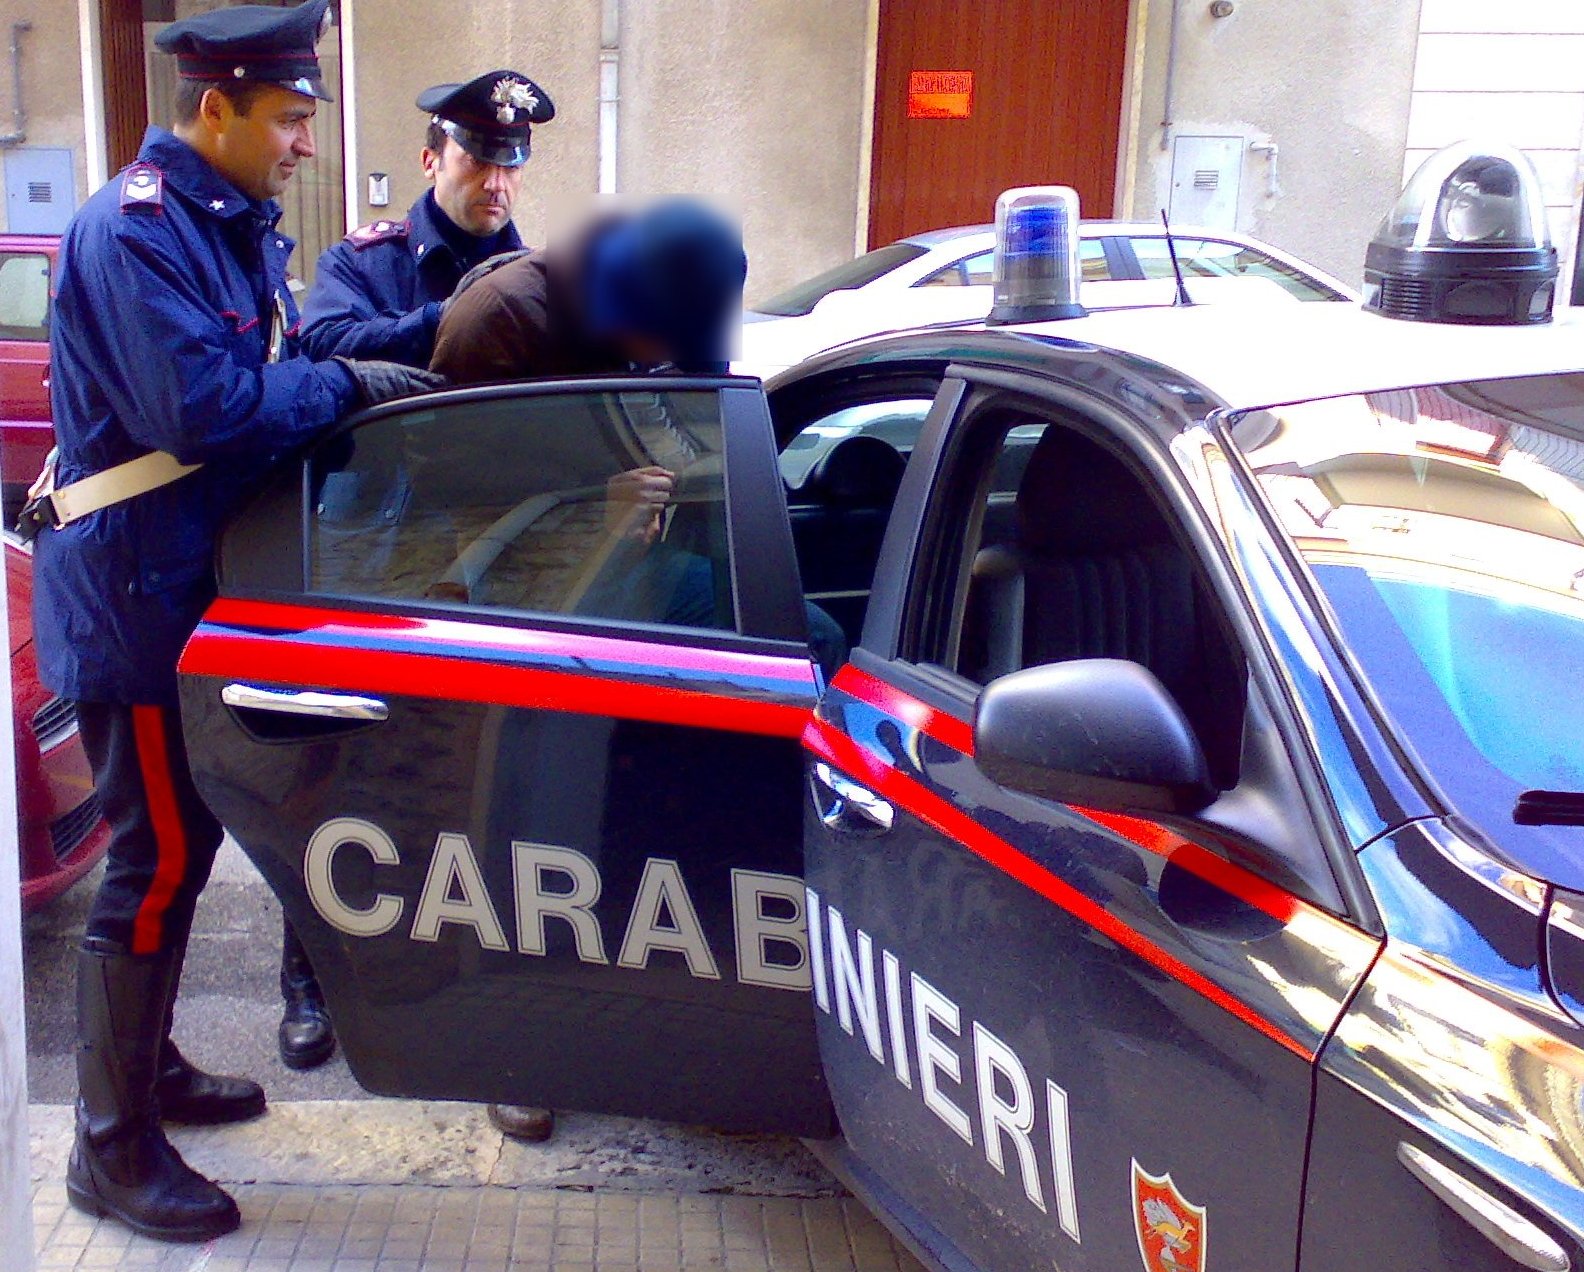 carabinieri-arresto.jpg (1584×1272)